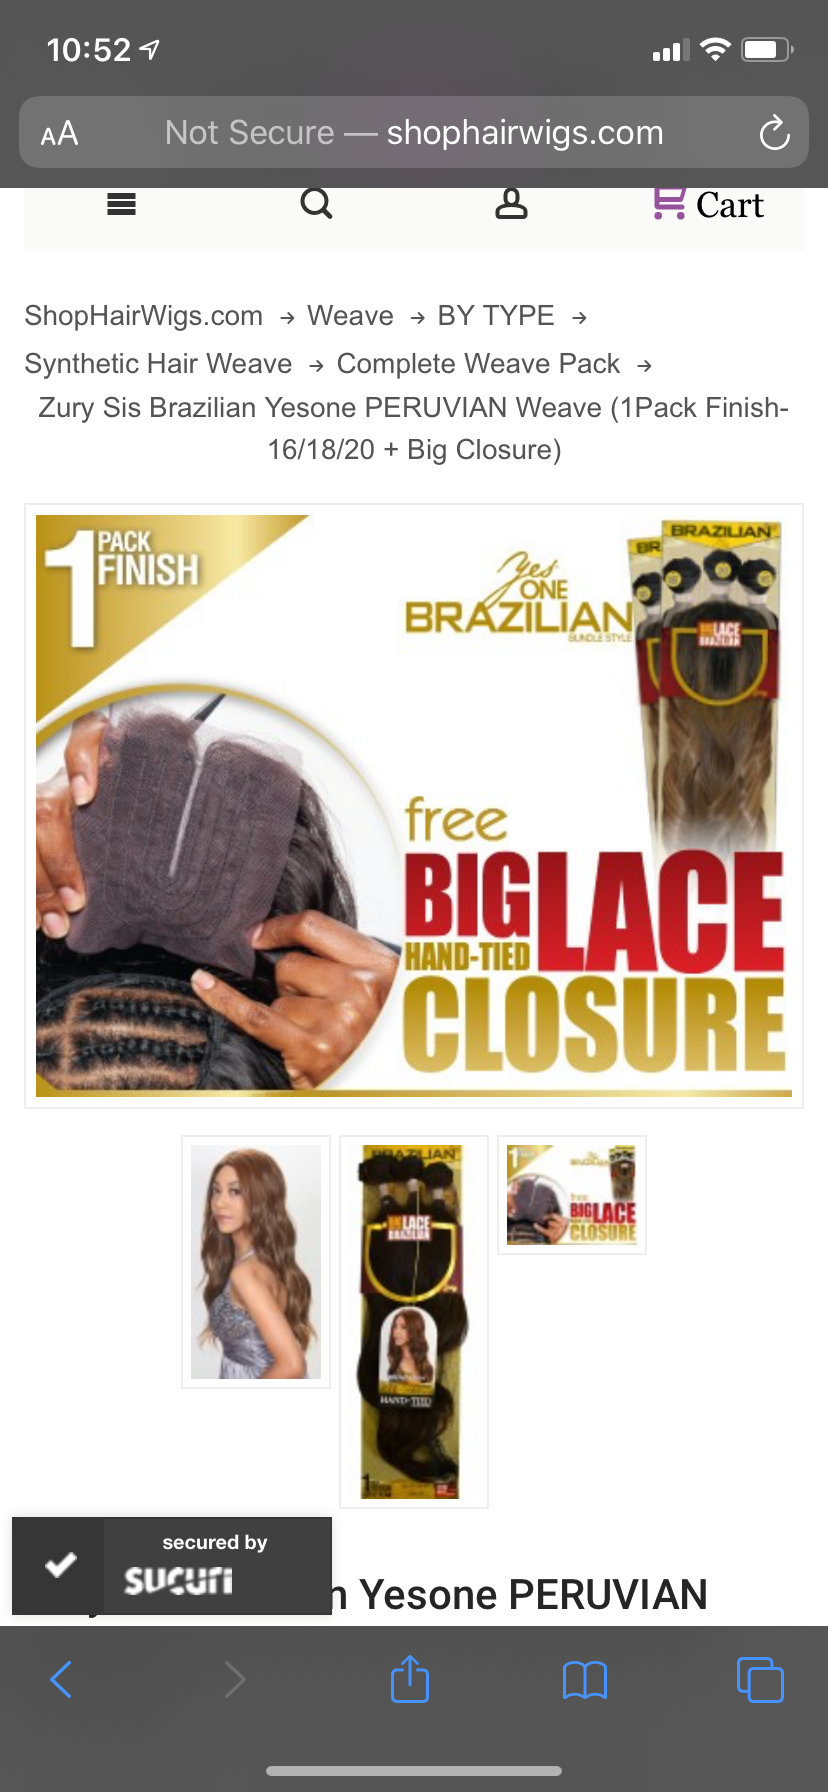 Zury Sis Brazilian Yesone PERUVIAN Weave (1Pack Finish-16/18/20 + Big Closure)